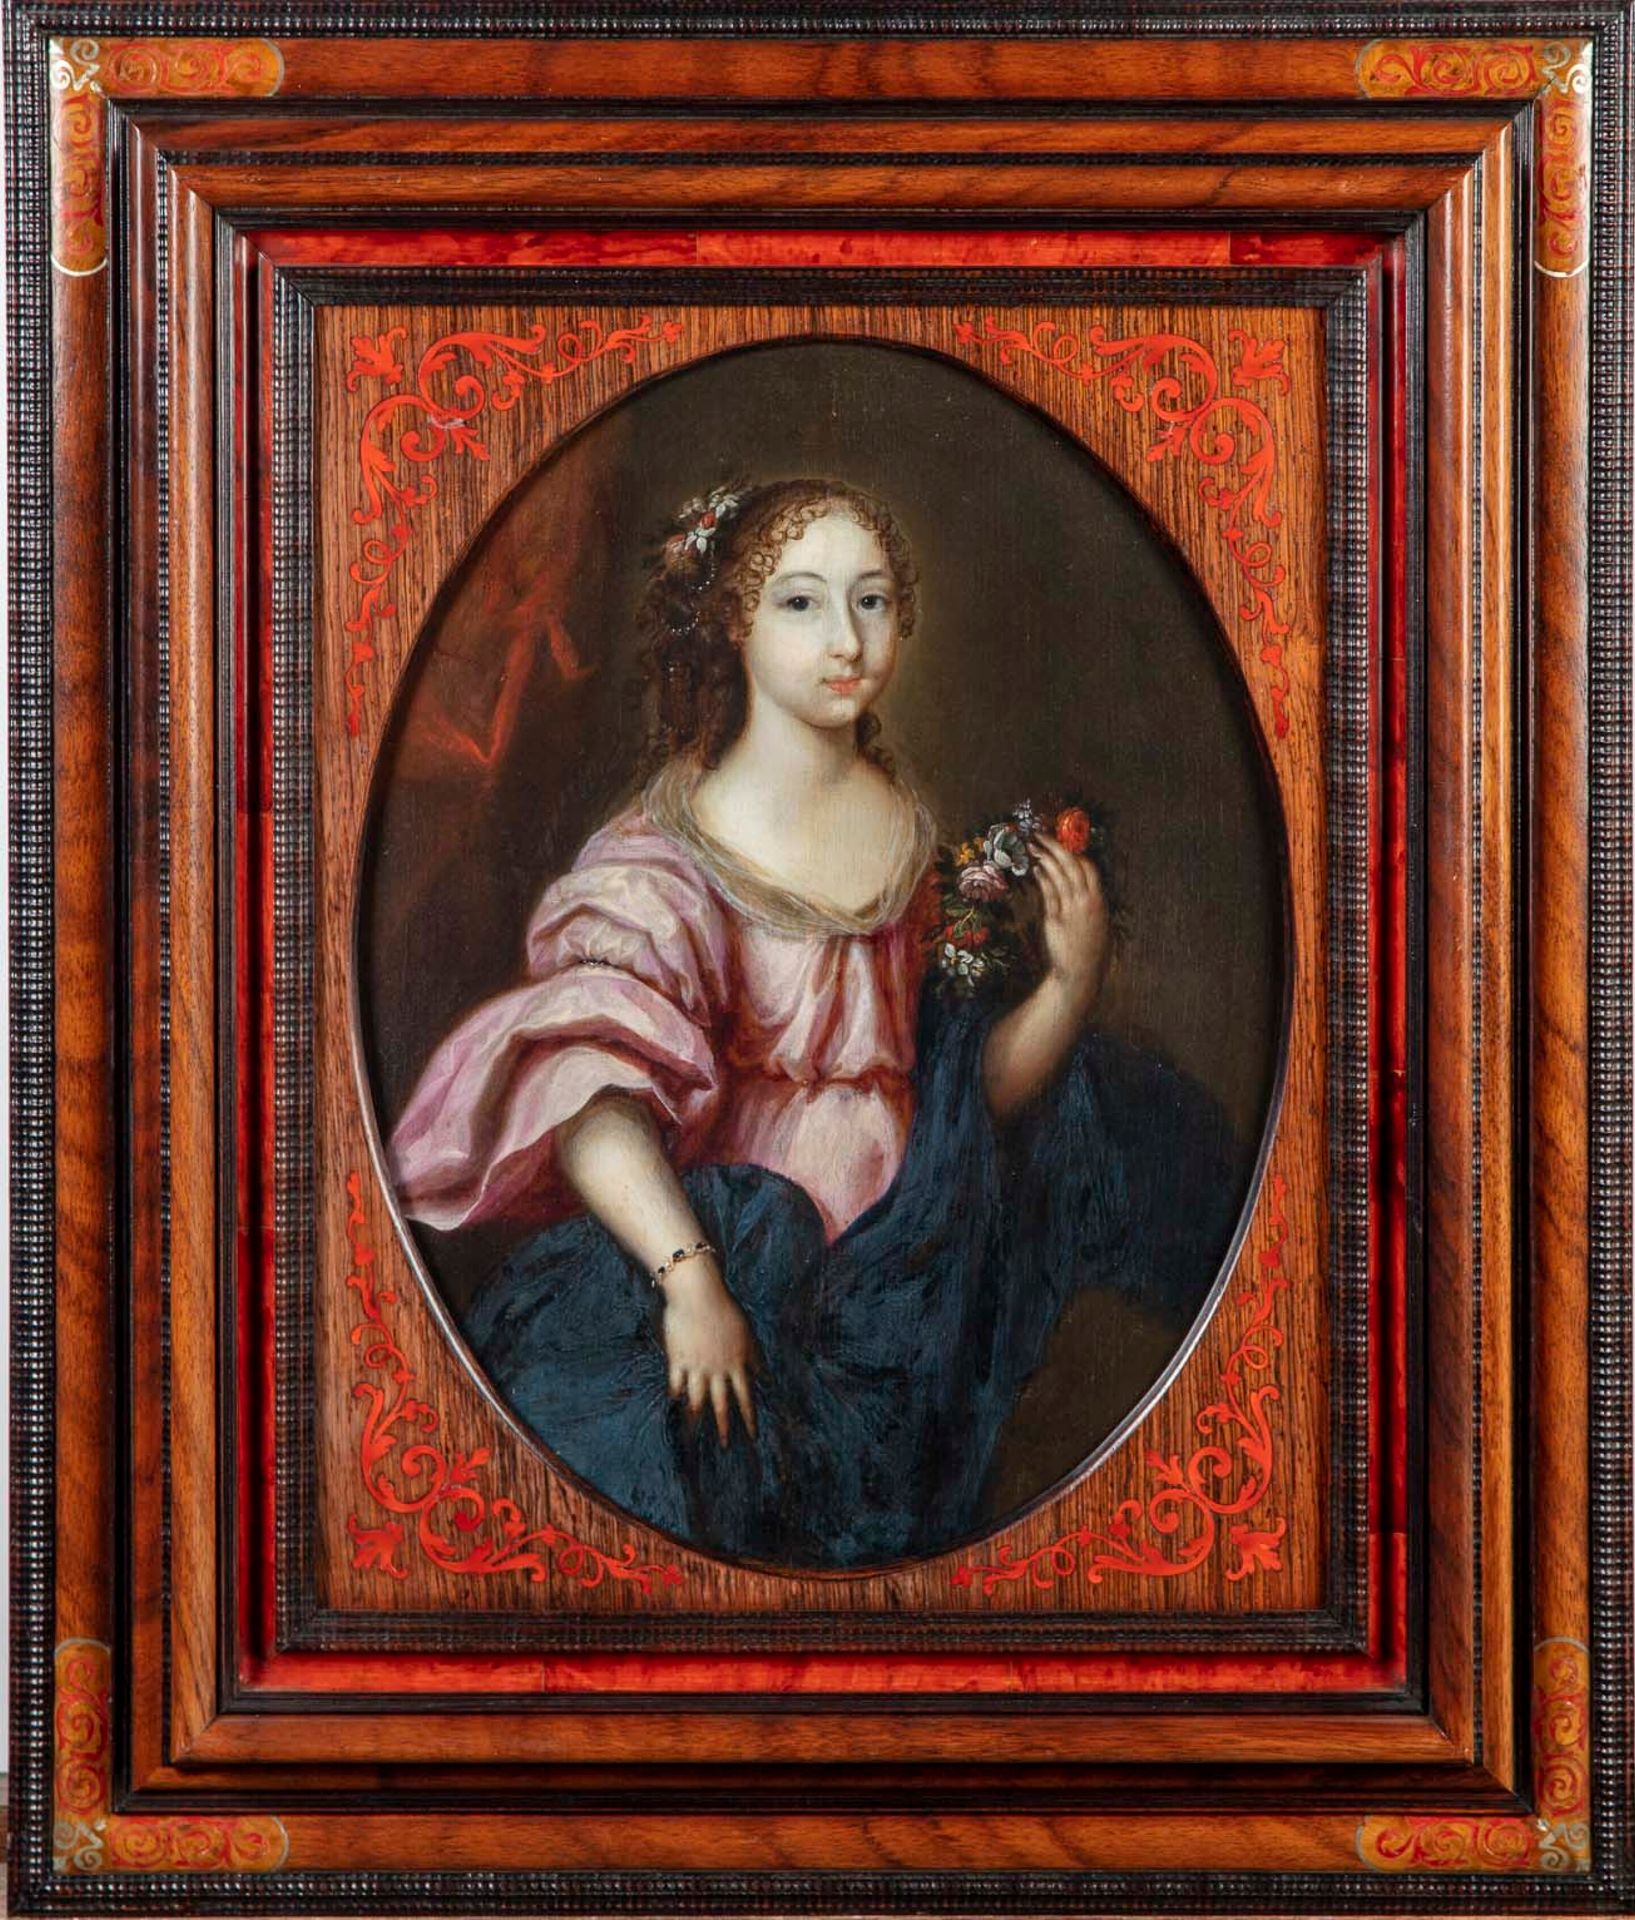 Ecole Flamande XVIIè ESCUELA FLEMES DEL SIGLO XVII

Retrato de una mujer joven c&hellip;